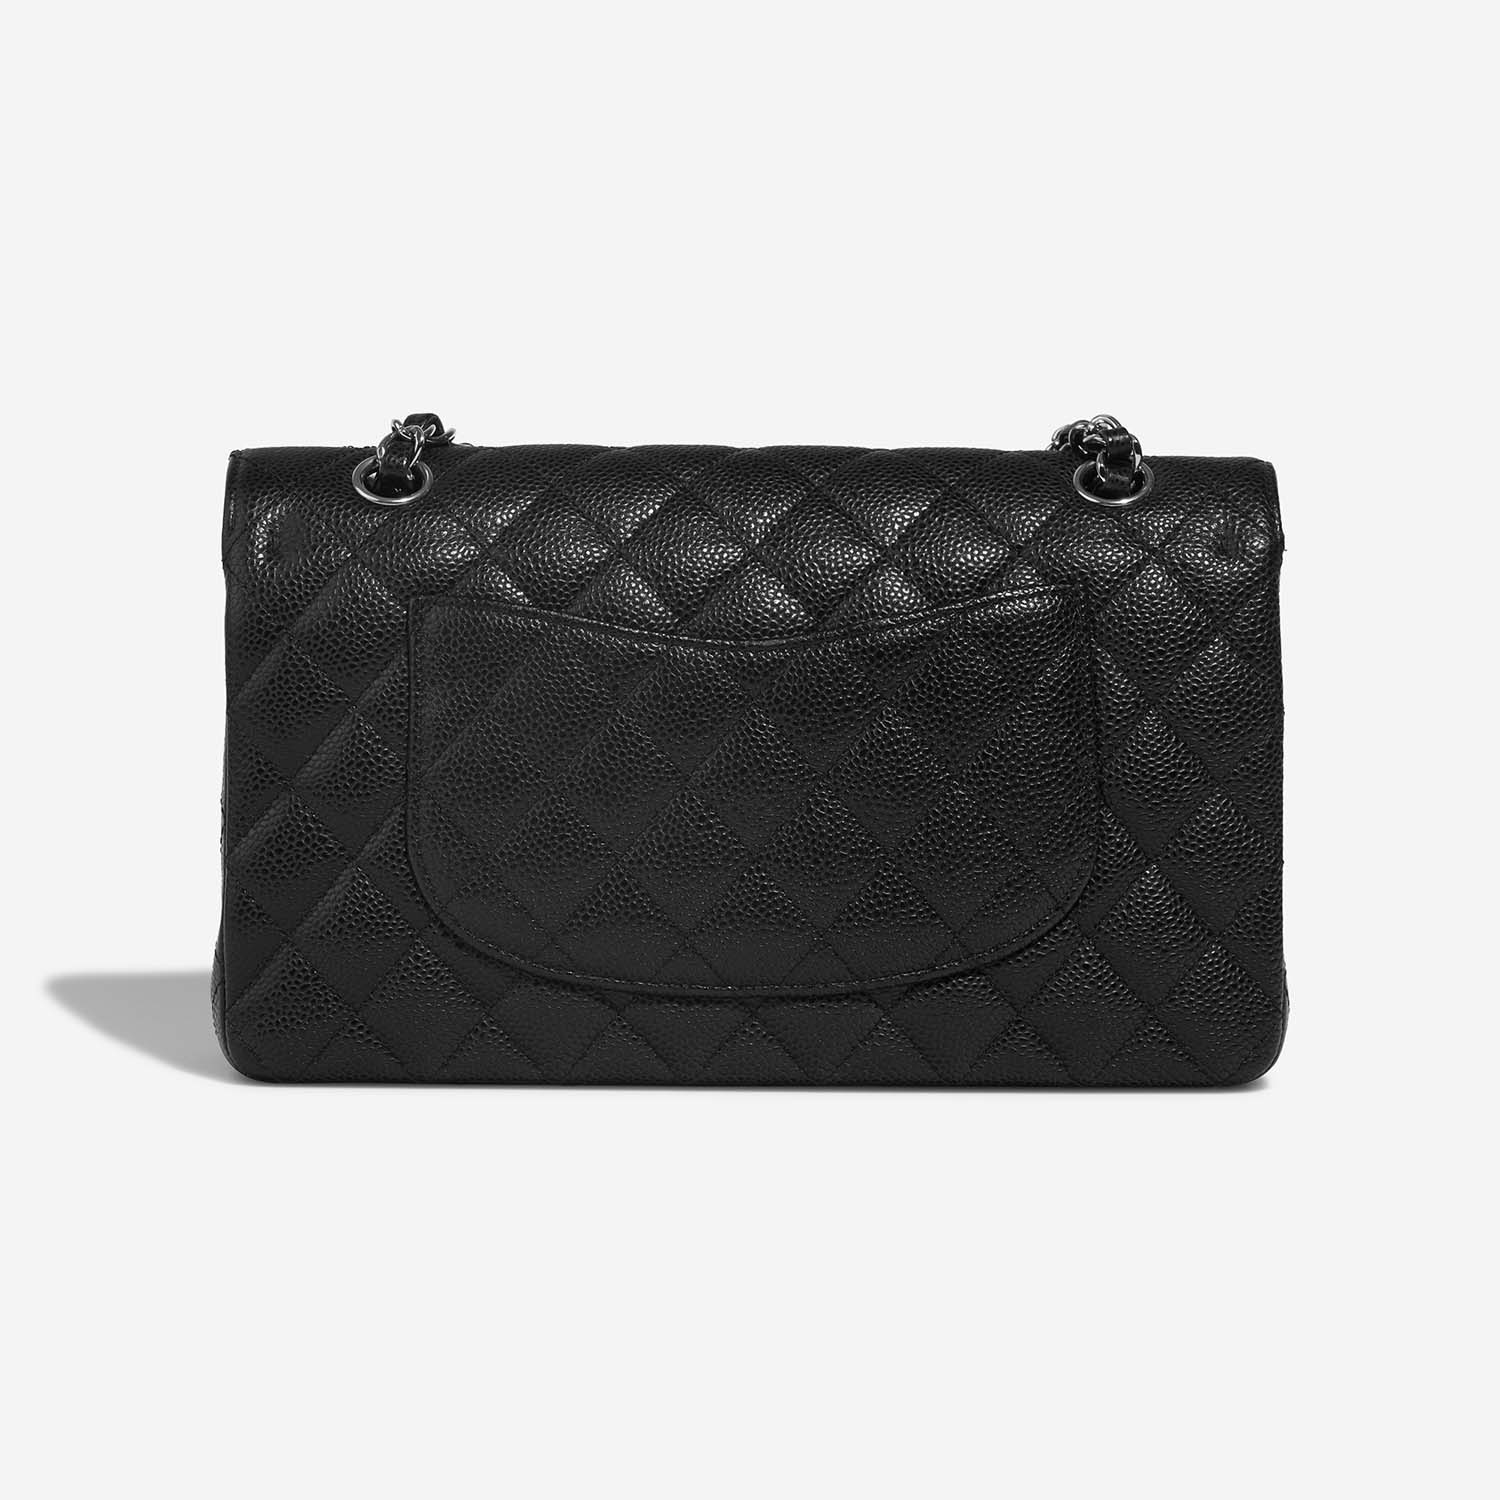 Chanel Timeless Medium Black Back | Verkaufen Sie Ihre Designer-Tasche auf Saclab.com